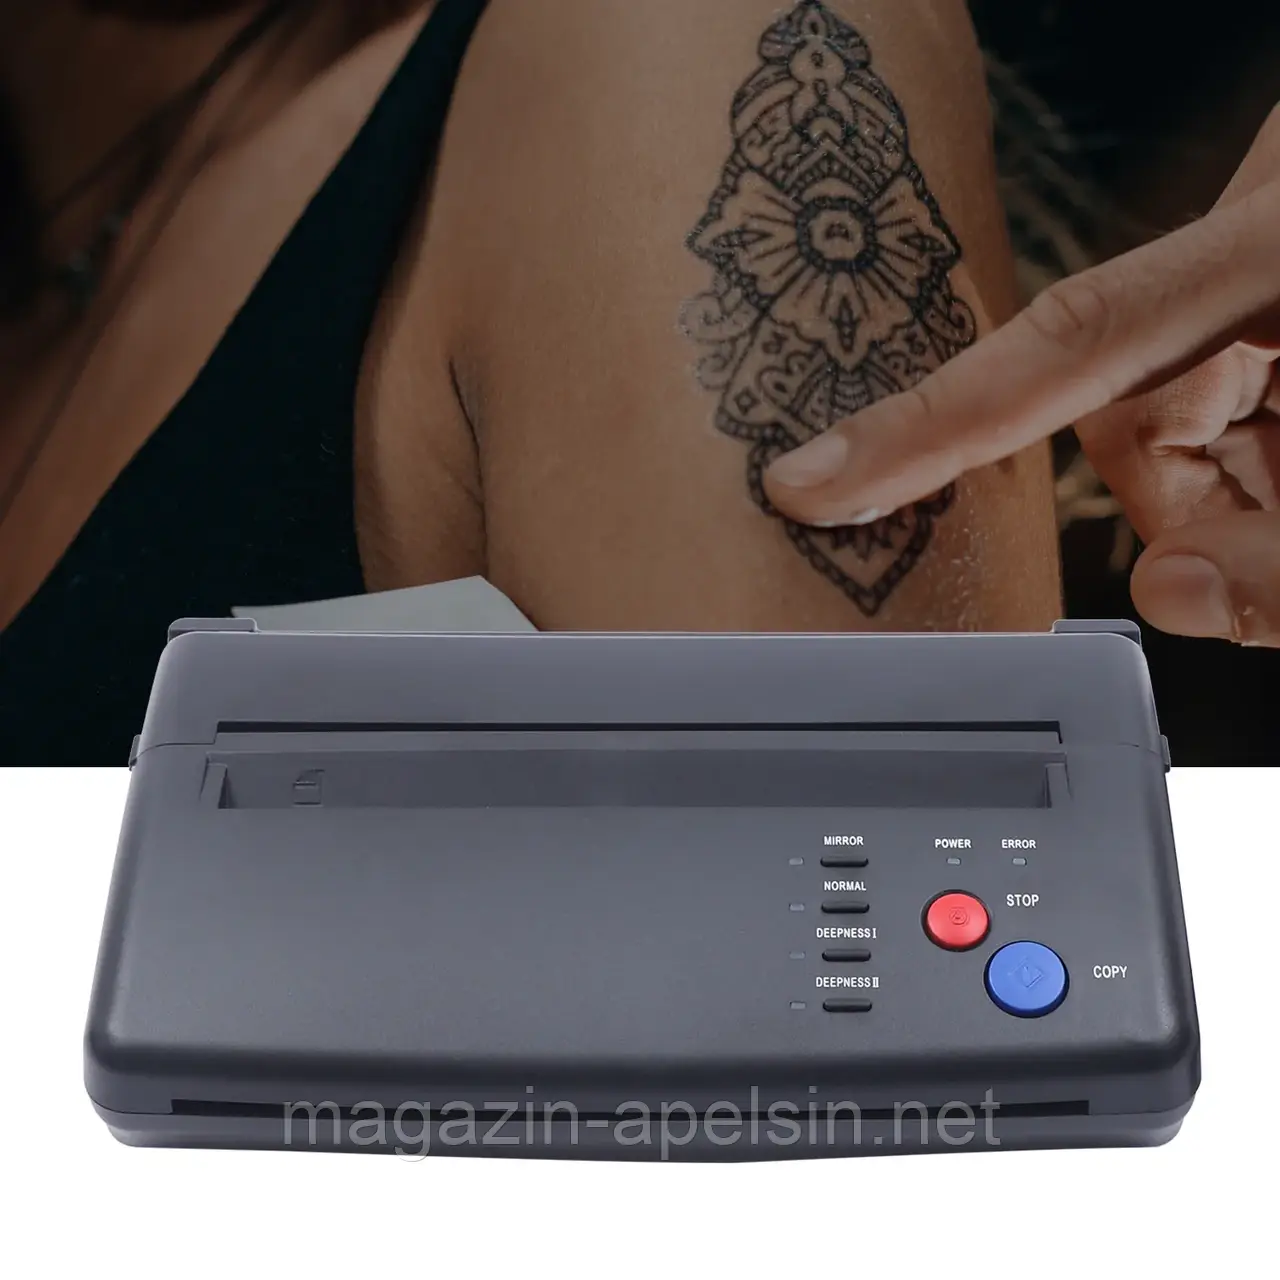 5 Вт татуювання перенесення машини системи трафарету копіювальний принтер тепловий трафарет, ефективна ширина сканування 210 мм